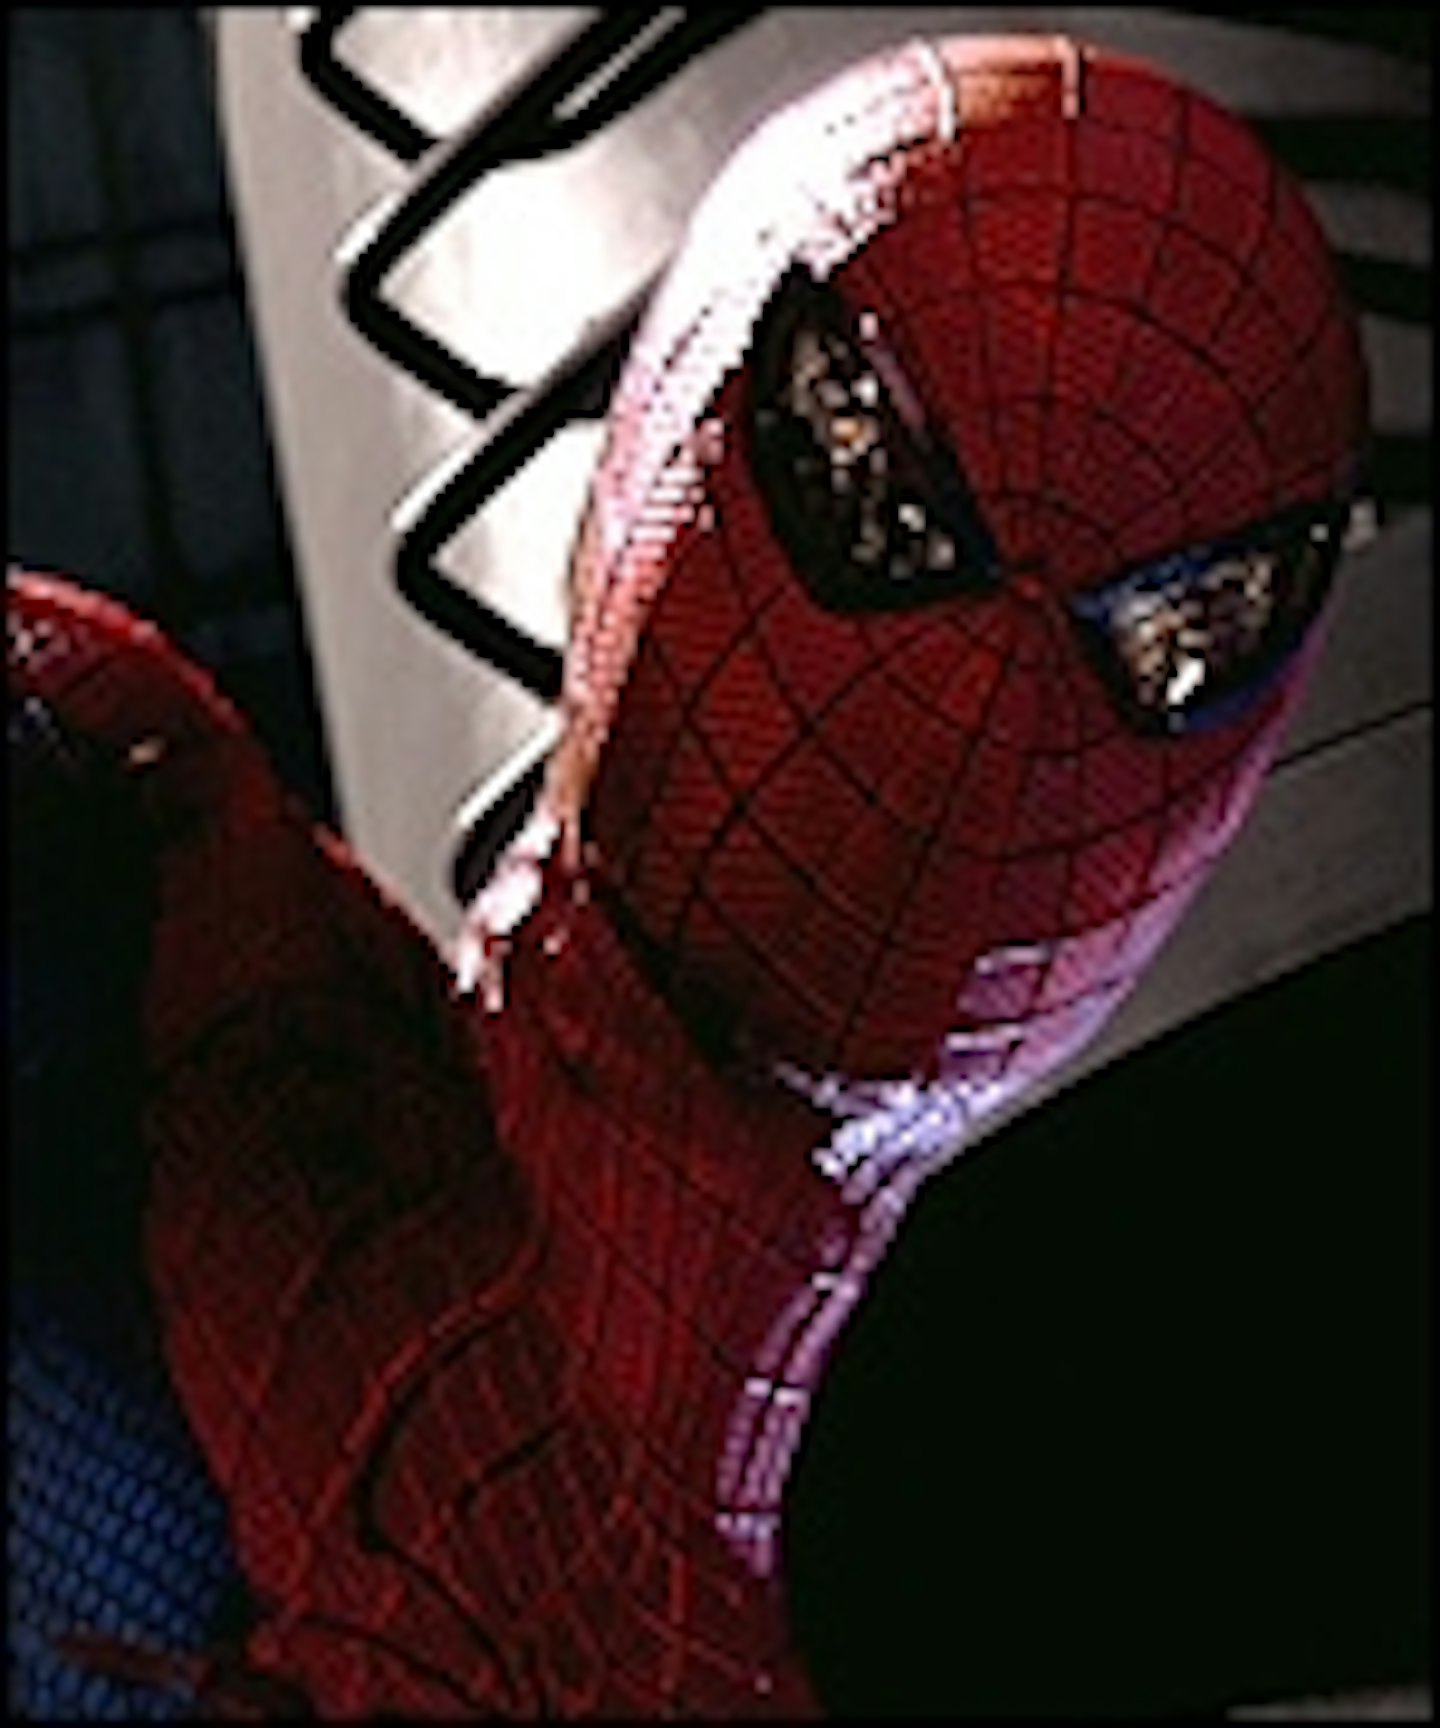 Latest Amazing Spider-Man Trailer Online